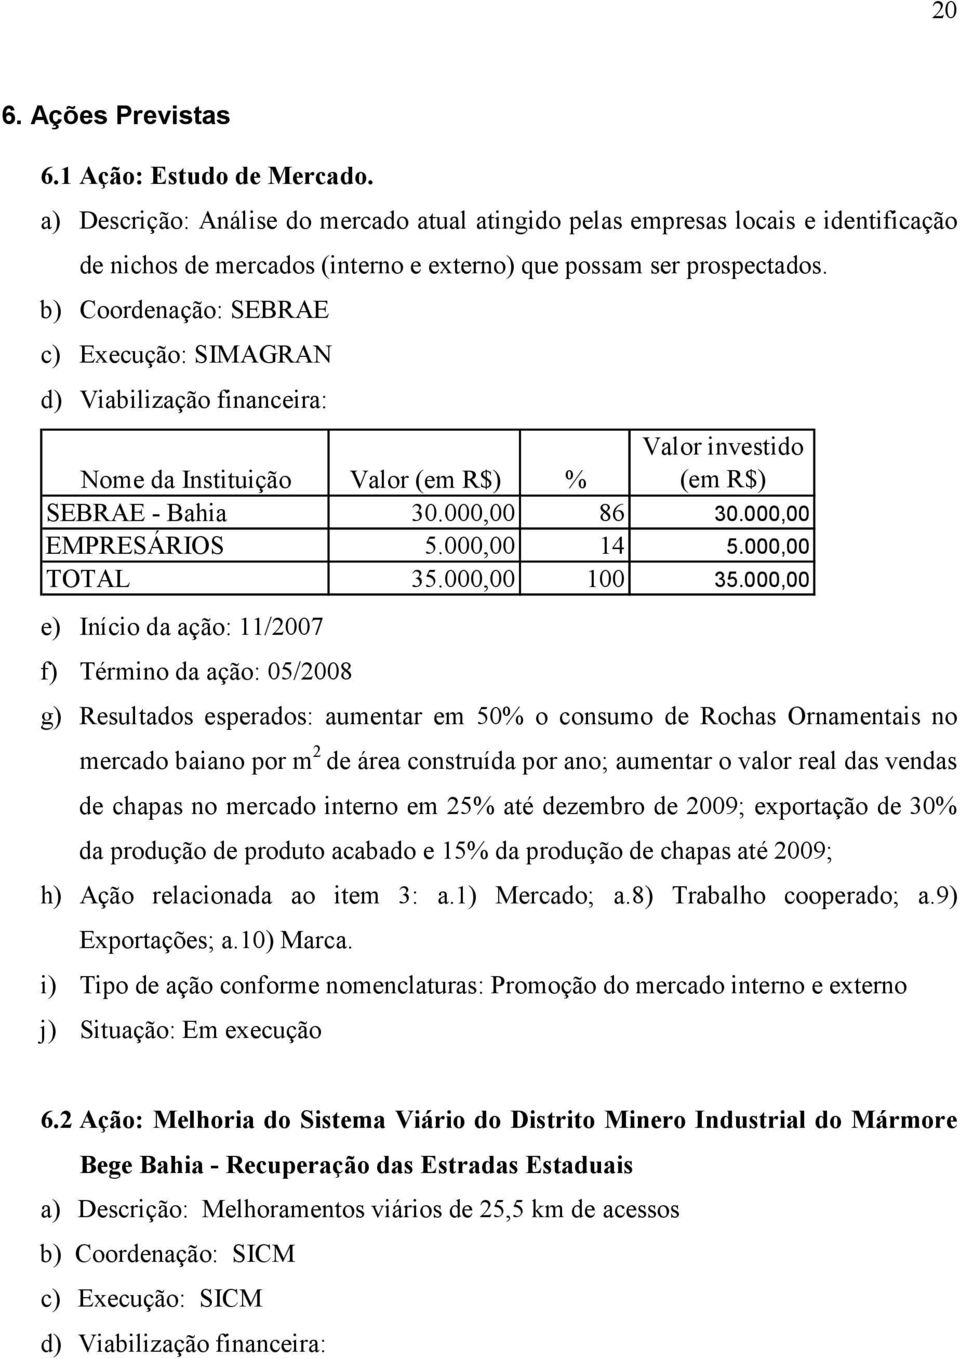 b) Coordenação: SEBRAE c) Execução: SIMAGRAN d) Viabilização financeira: Nome da Instituição Valor (em R$) % Valor investido (em R$) SEBRAE - Bahia 30.000,00 86 30.000,00 EMPRESÁRIOS 5.000,00 14 5.